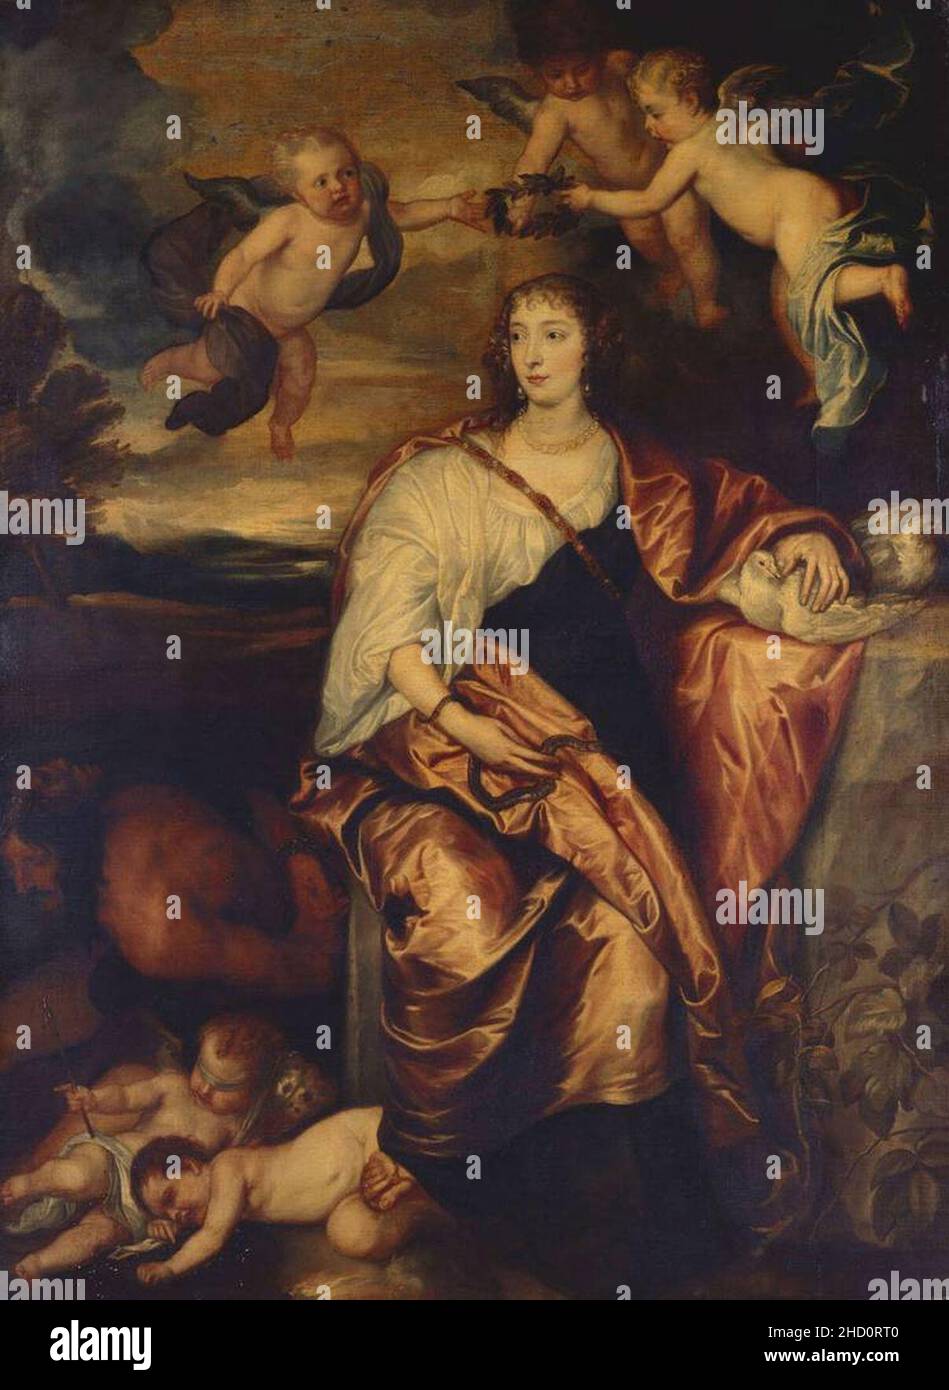 Ritratto di Lady Digby come Prudenza - copia da Van Dyck. Stock Photo